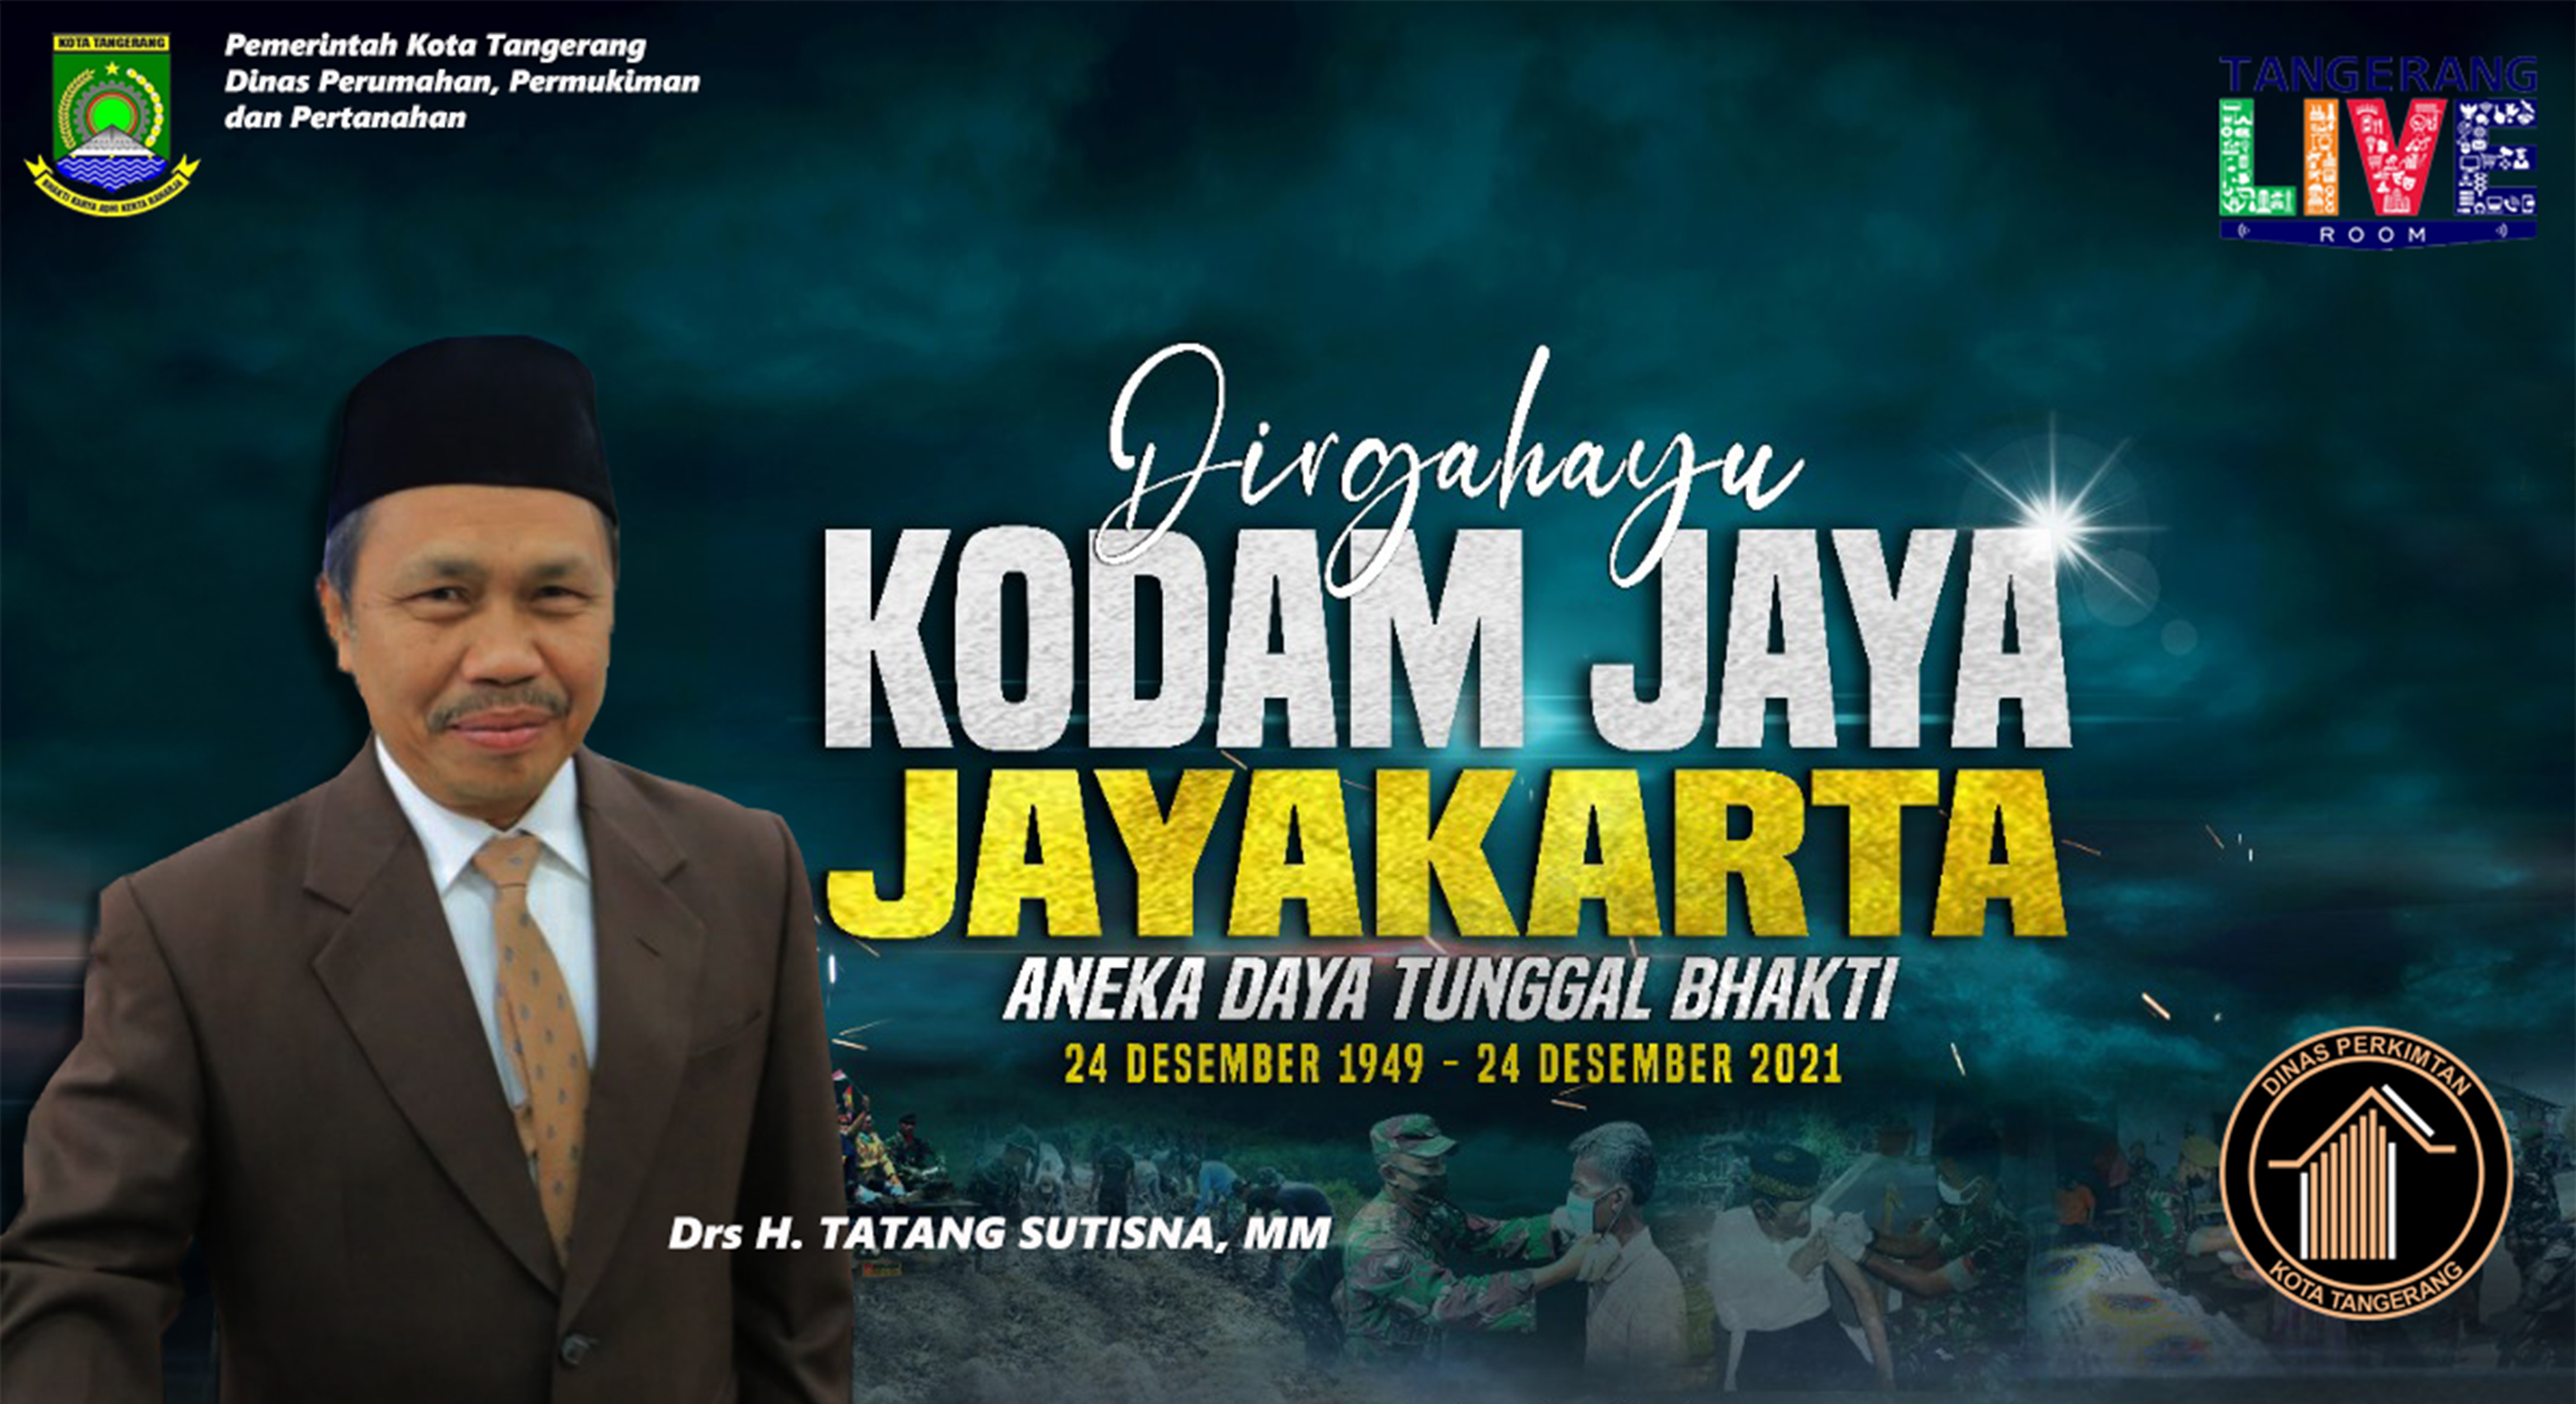 Selamat Hari jadi untuk KODAM Jaya/Jayakarta yang ke-72.  Terima kasih atas dedikasinya dalam menjaga masyarakat, khususnya warga Kota Tangerang.  Tetap semangat dalam menjaga profesionalitas, serta bersinergi dalam mengayomi masyarakat, semoga semakin ja